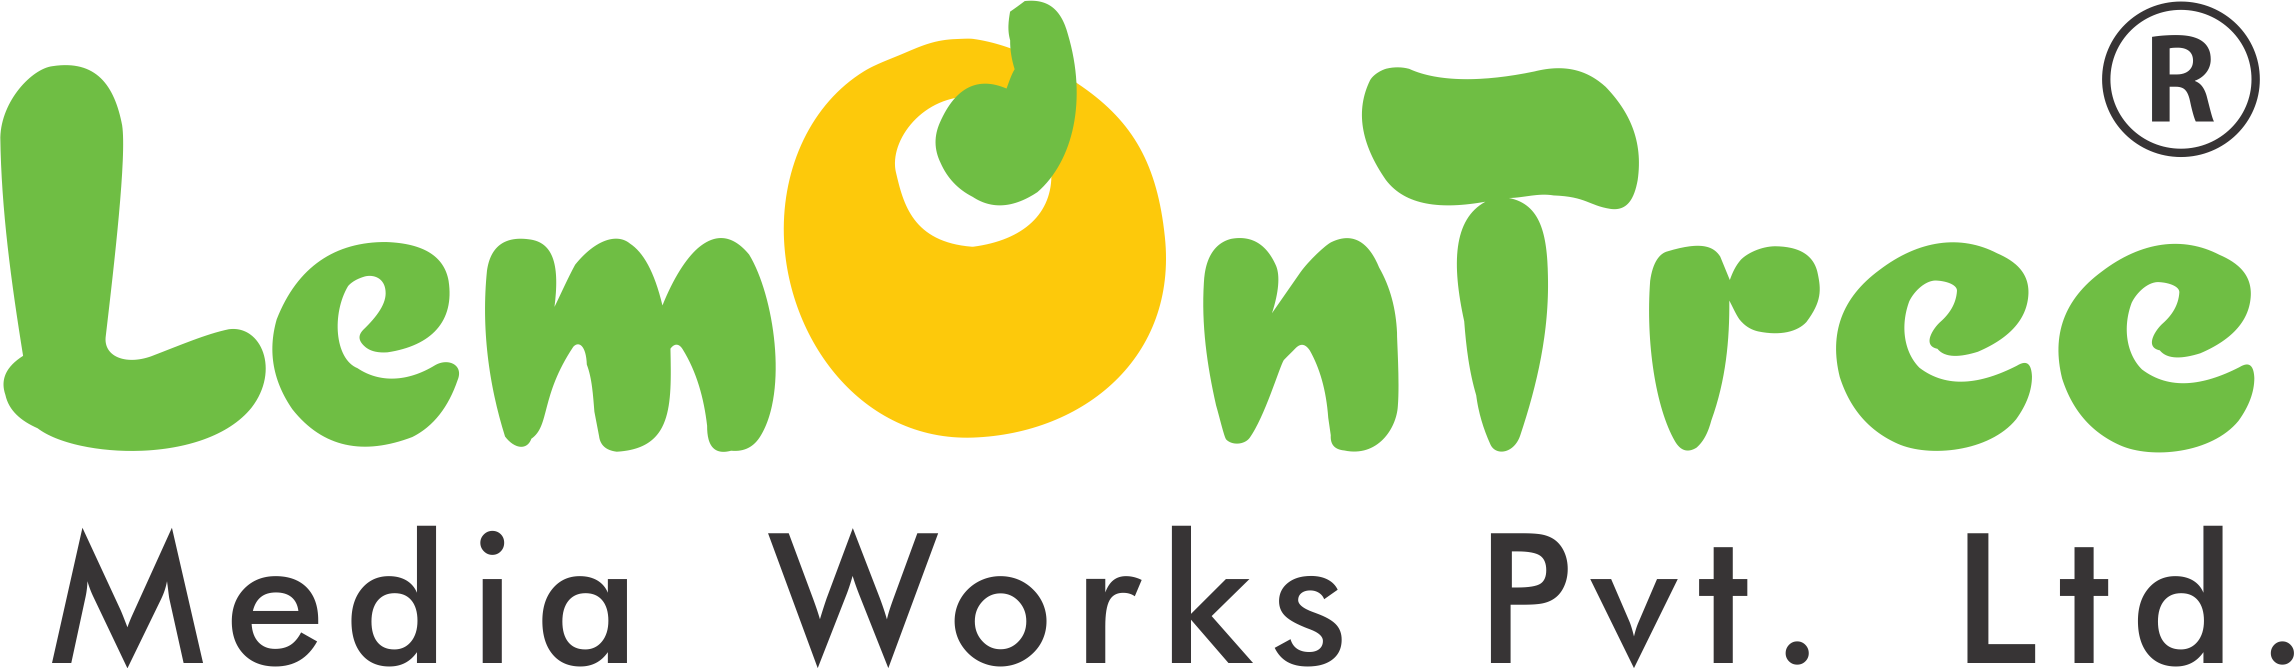 Lemontree Media Works Logo Clipart (2294x668), Png Download